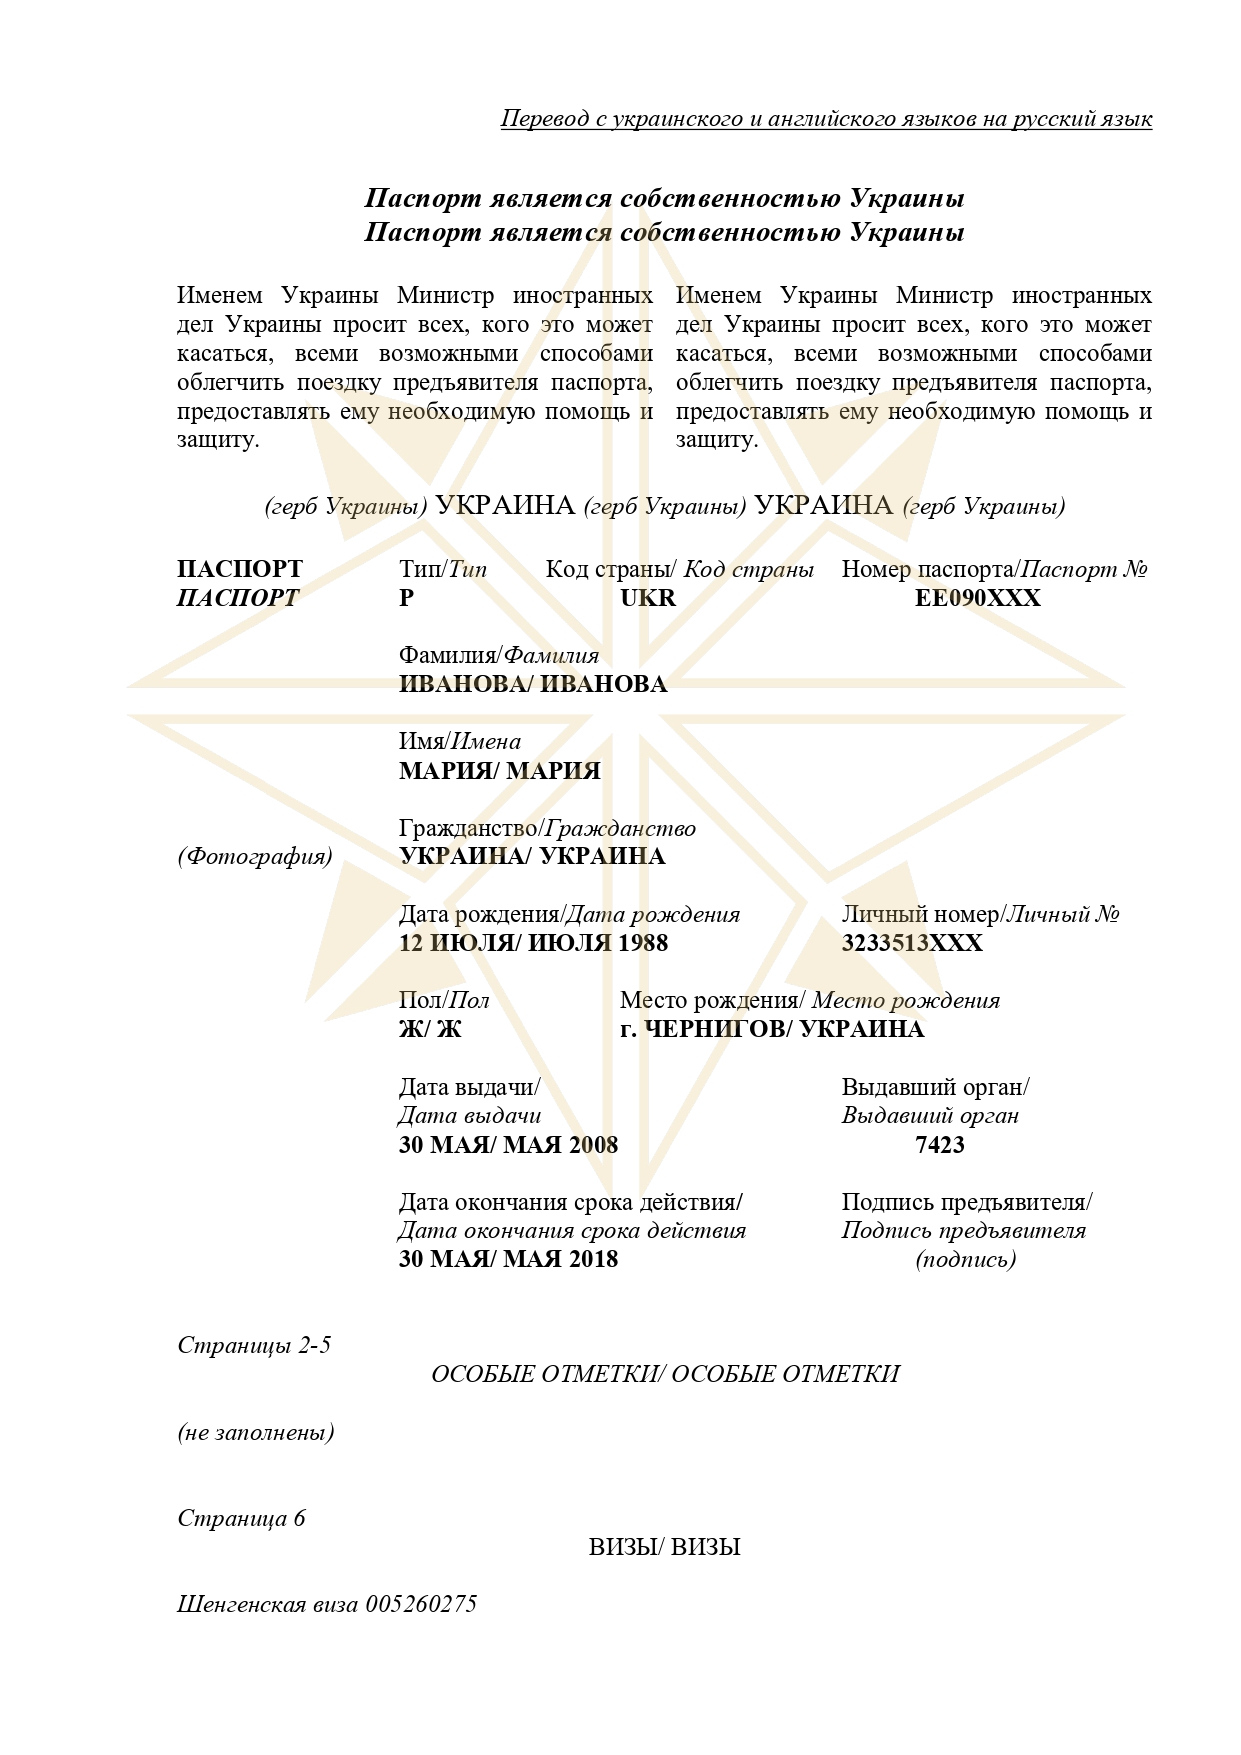 Перевод паспорта Украины